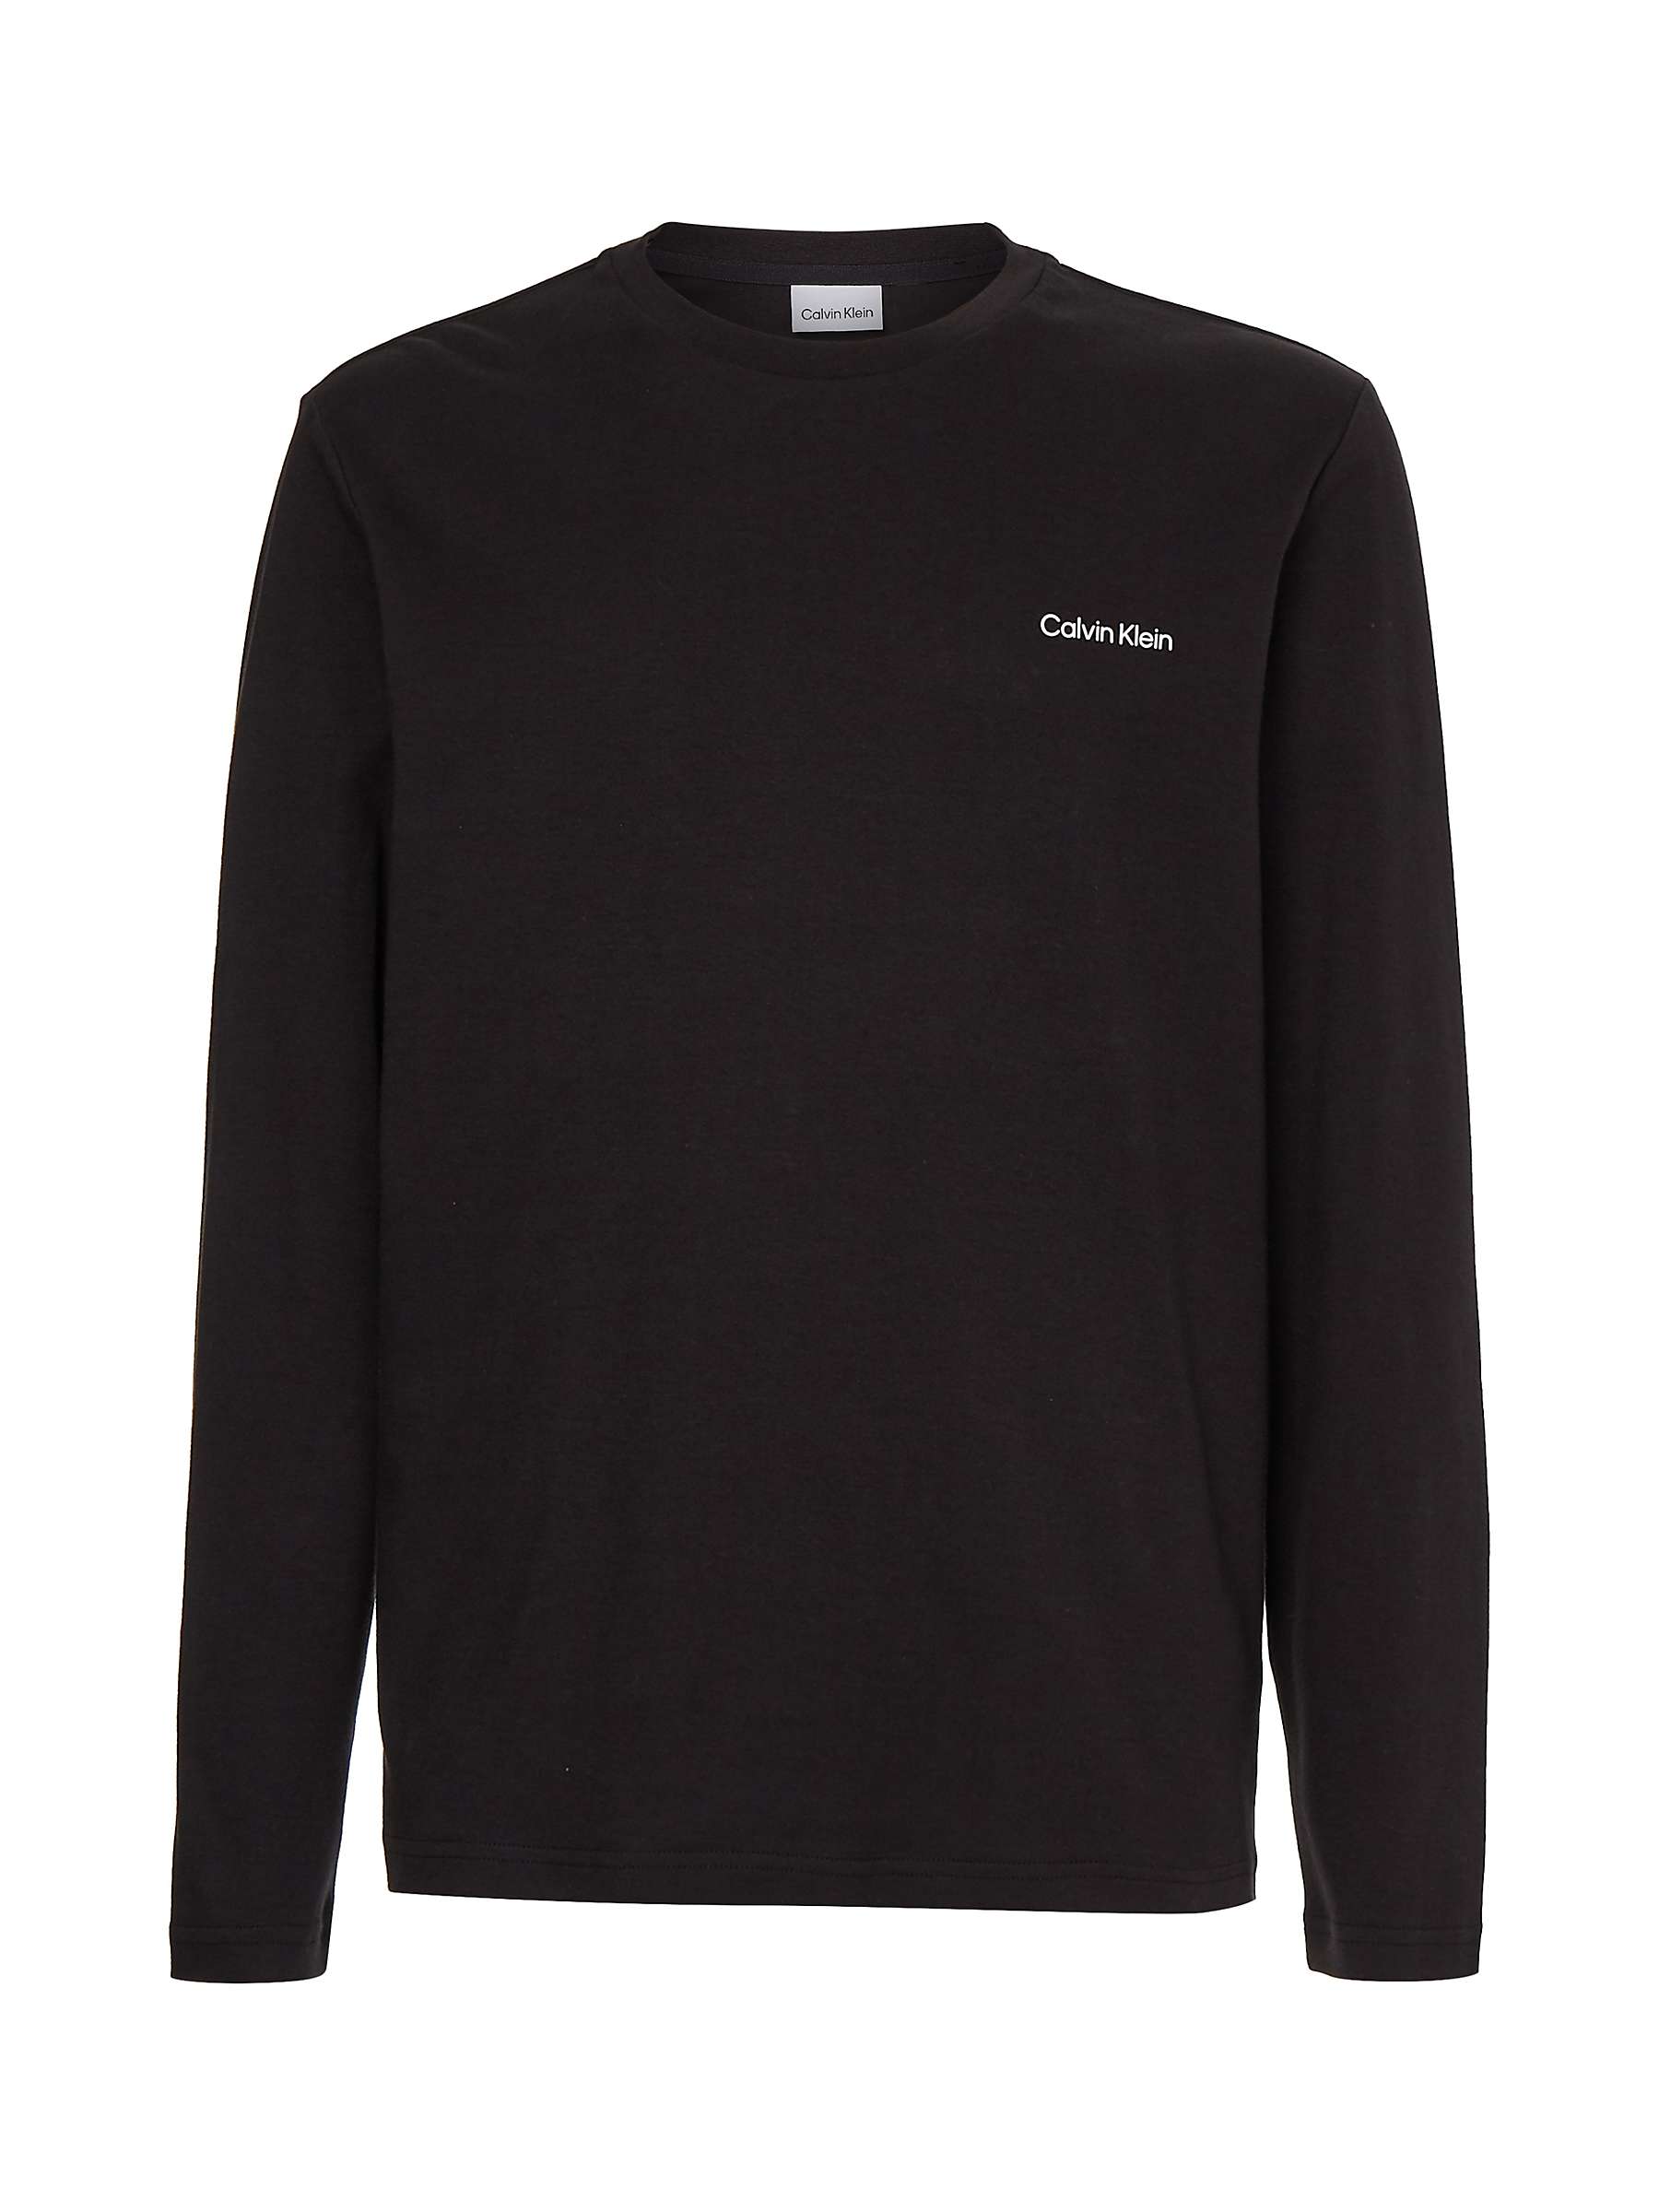 Buy Calvin Klein Interlocking Long Sleeve T-Shirt, CK Black Online at johnlewis.com